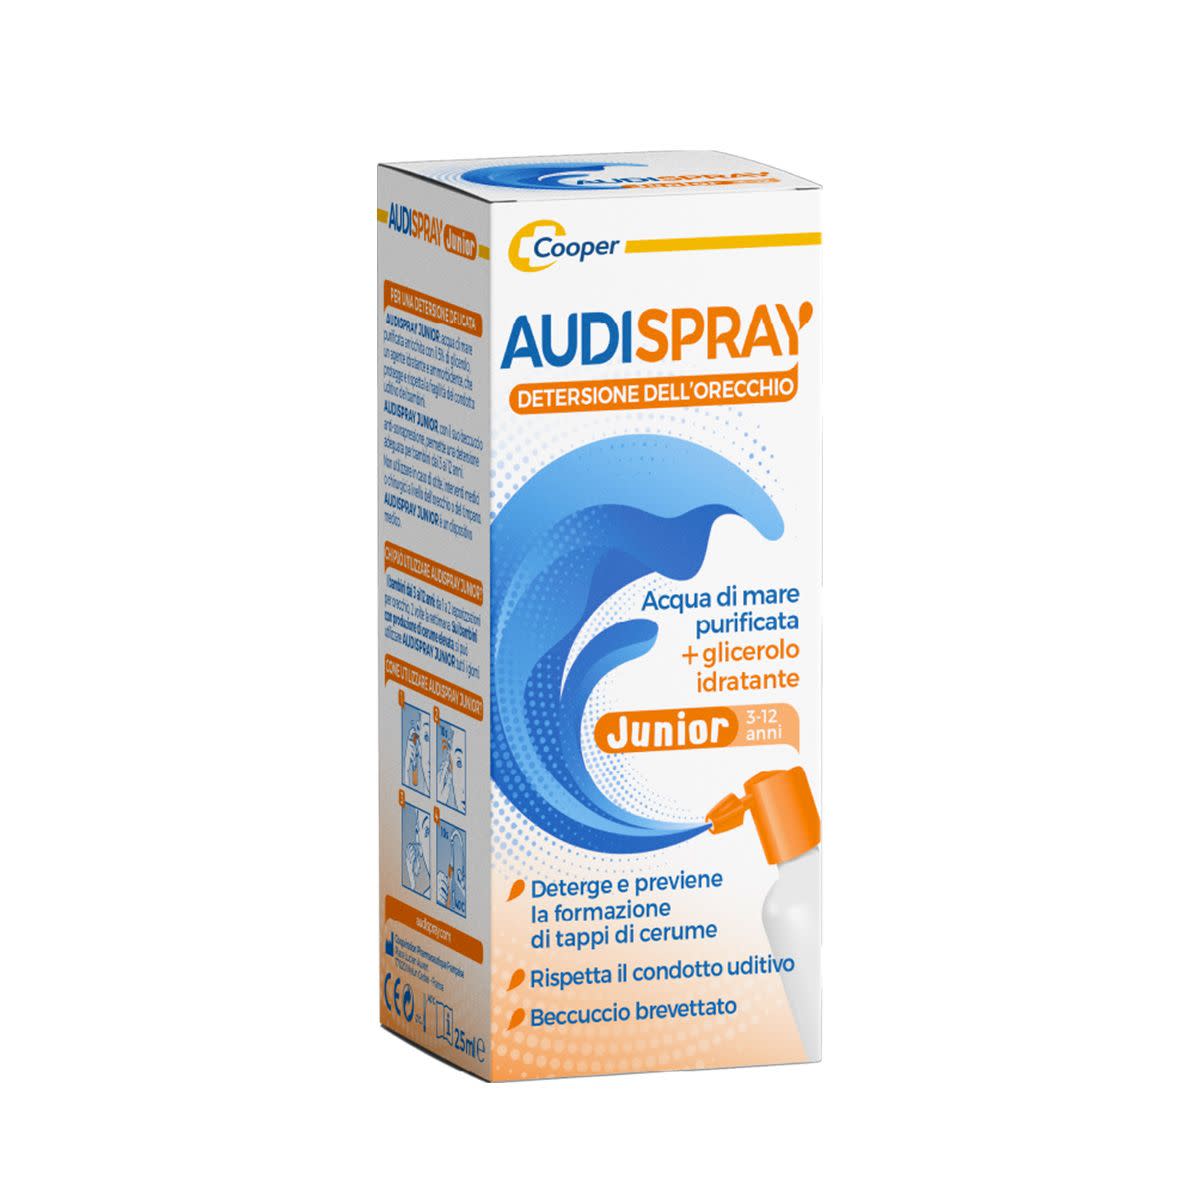 912467281 - Audispray Junior Spray Igiene Orecchio 25ml - 7870788_4.jpg